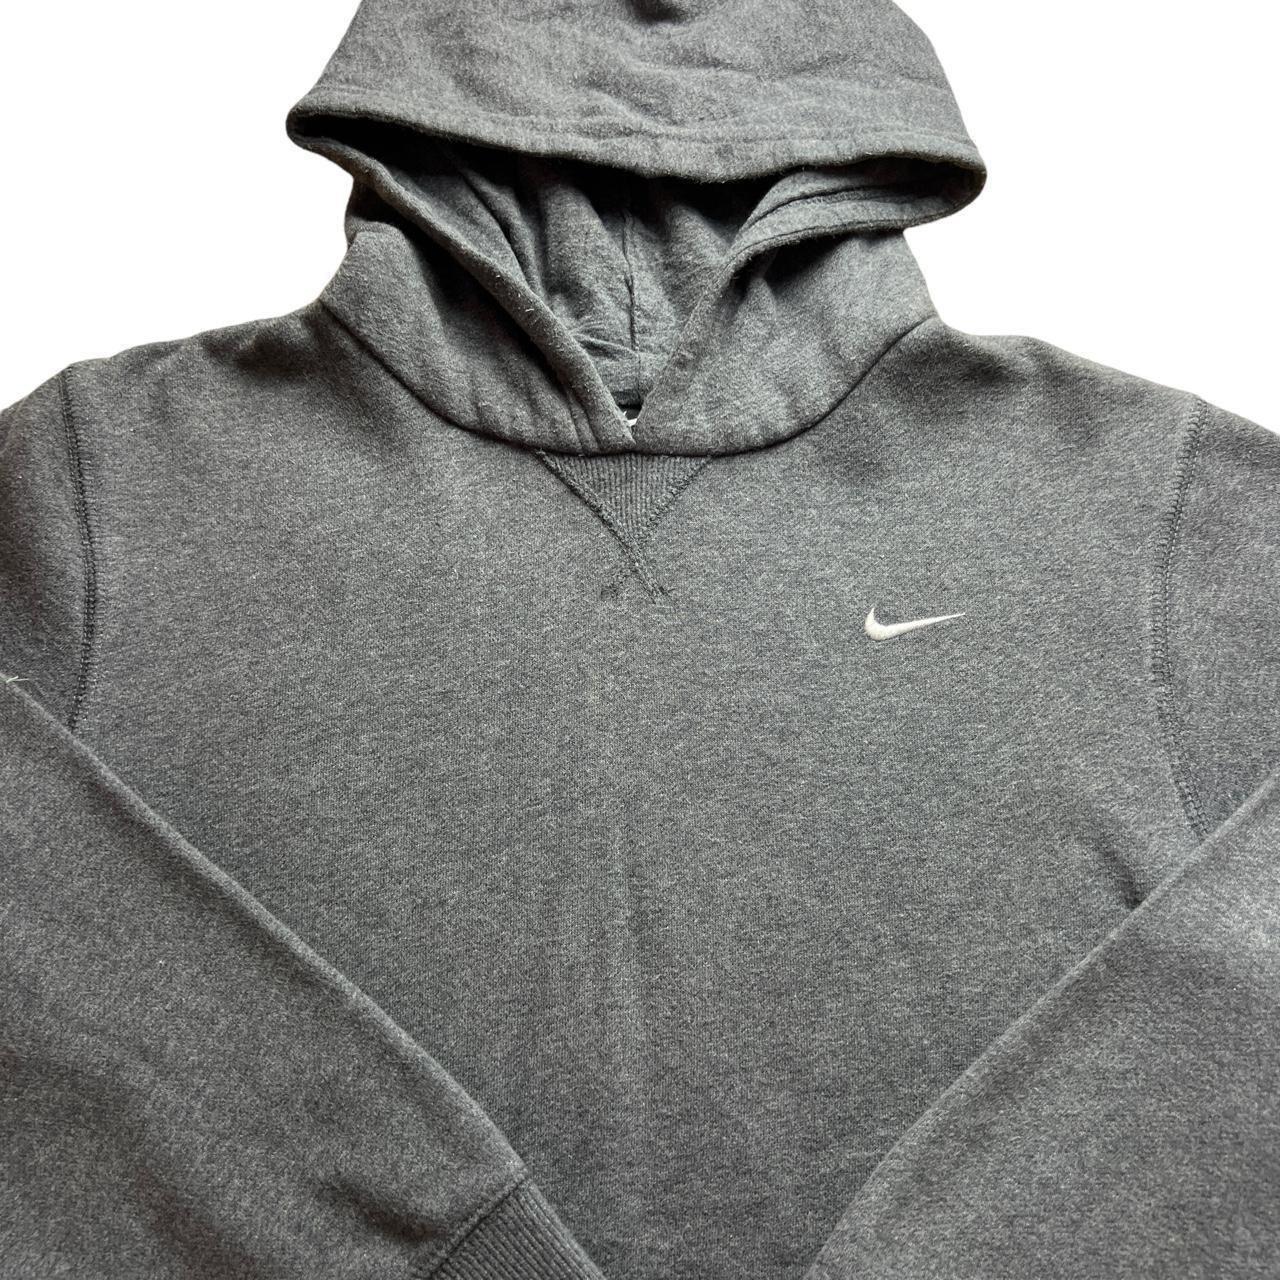 grey Nike Hoodie Kids size ( 12/13years) / Adult... - Depop